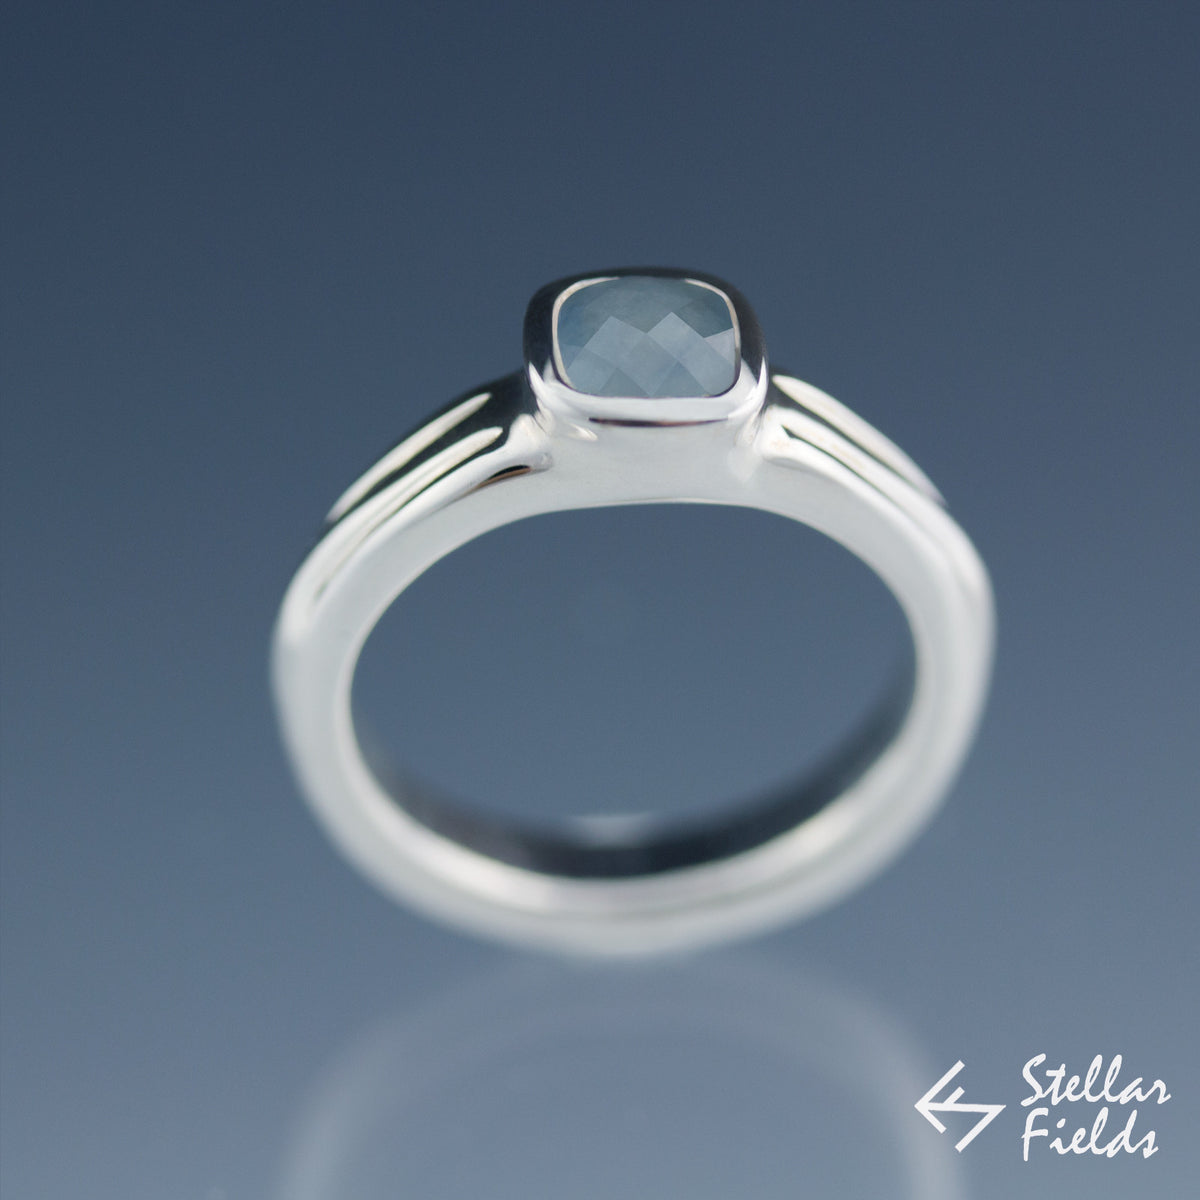 Bezel Set Cushion Cut Blue Sapphire Engagement Ring - Stellar Fields